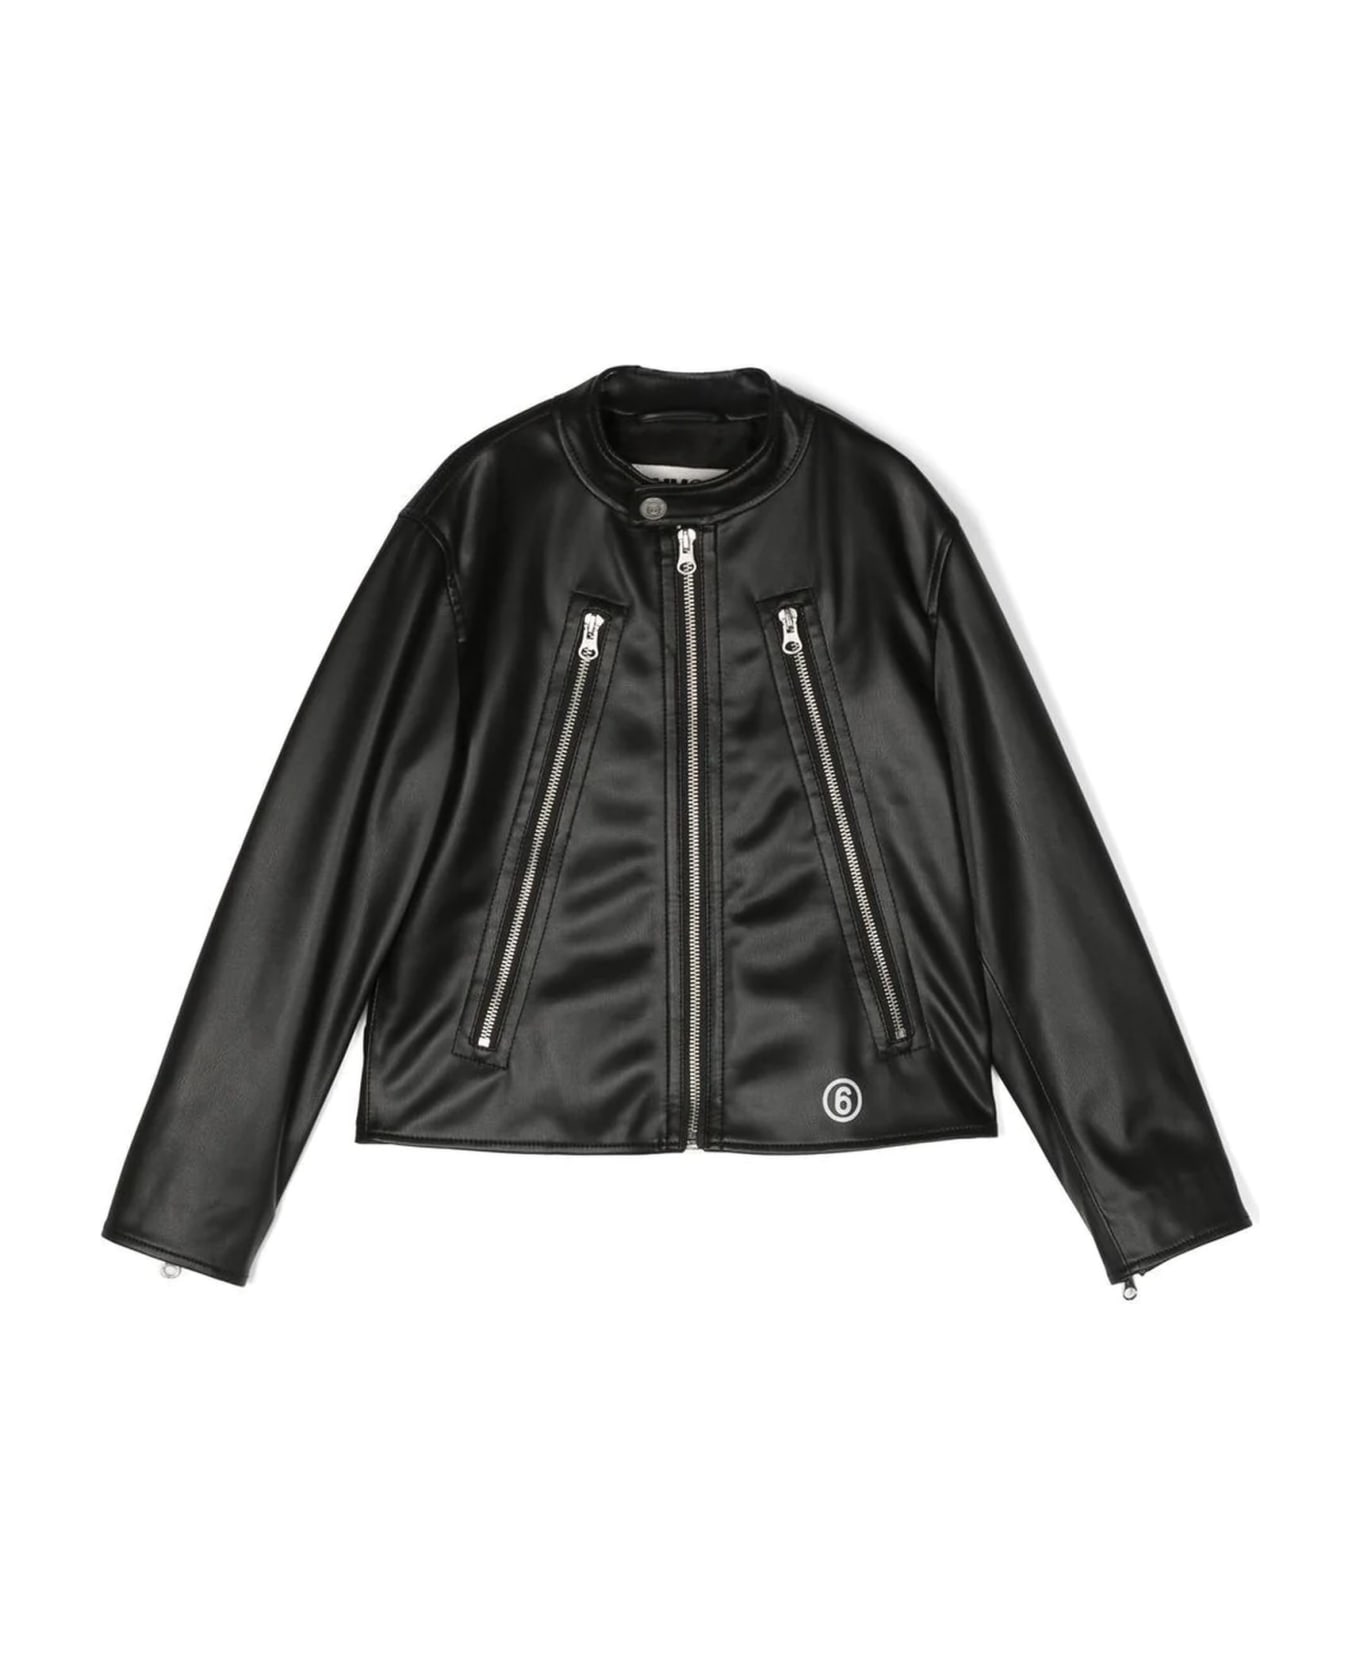 Maison Margiela Black Leather Jacket - Nero